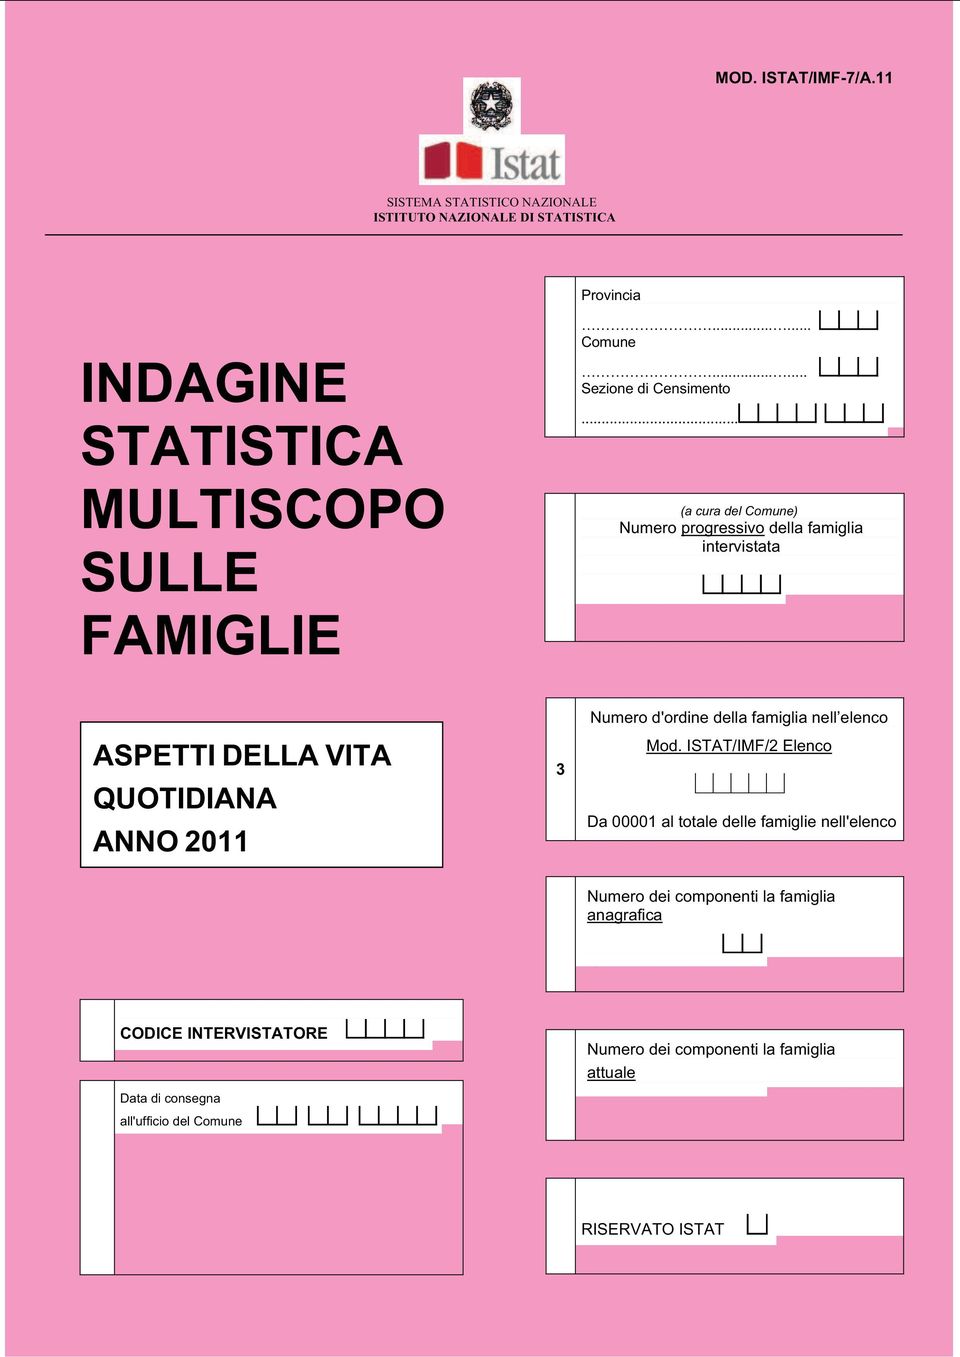 elenco Mod. ISTAT/IMF/2 Elenco Da 00001 al totale delle famiglie nell'elenco 4 Numero dei componenti la famiglia anagrafica (Colonna 4 del Mod.